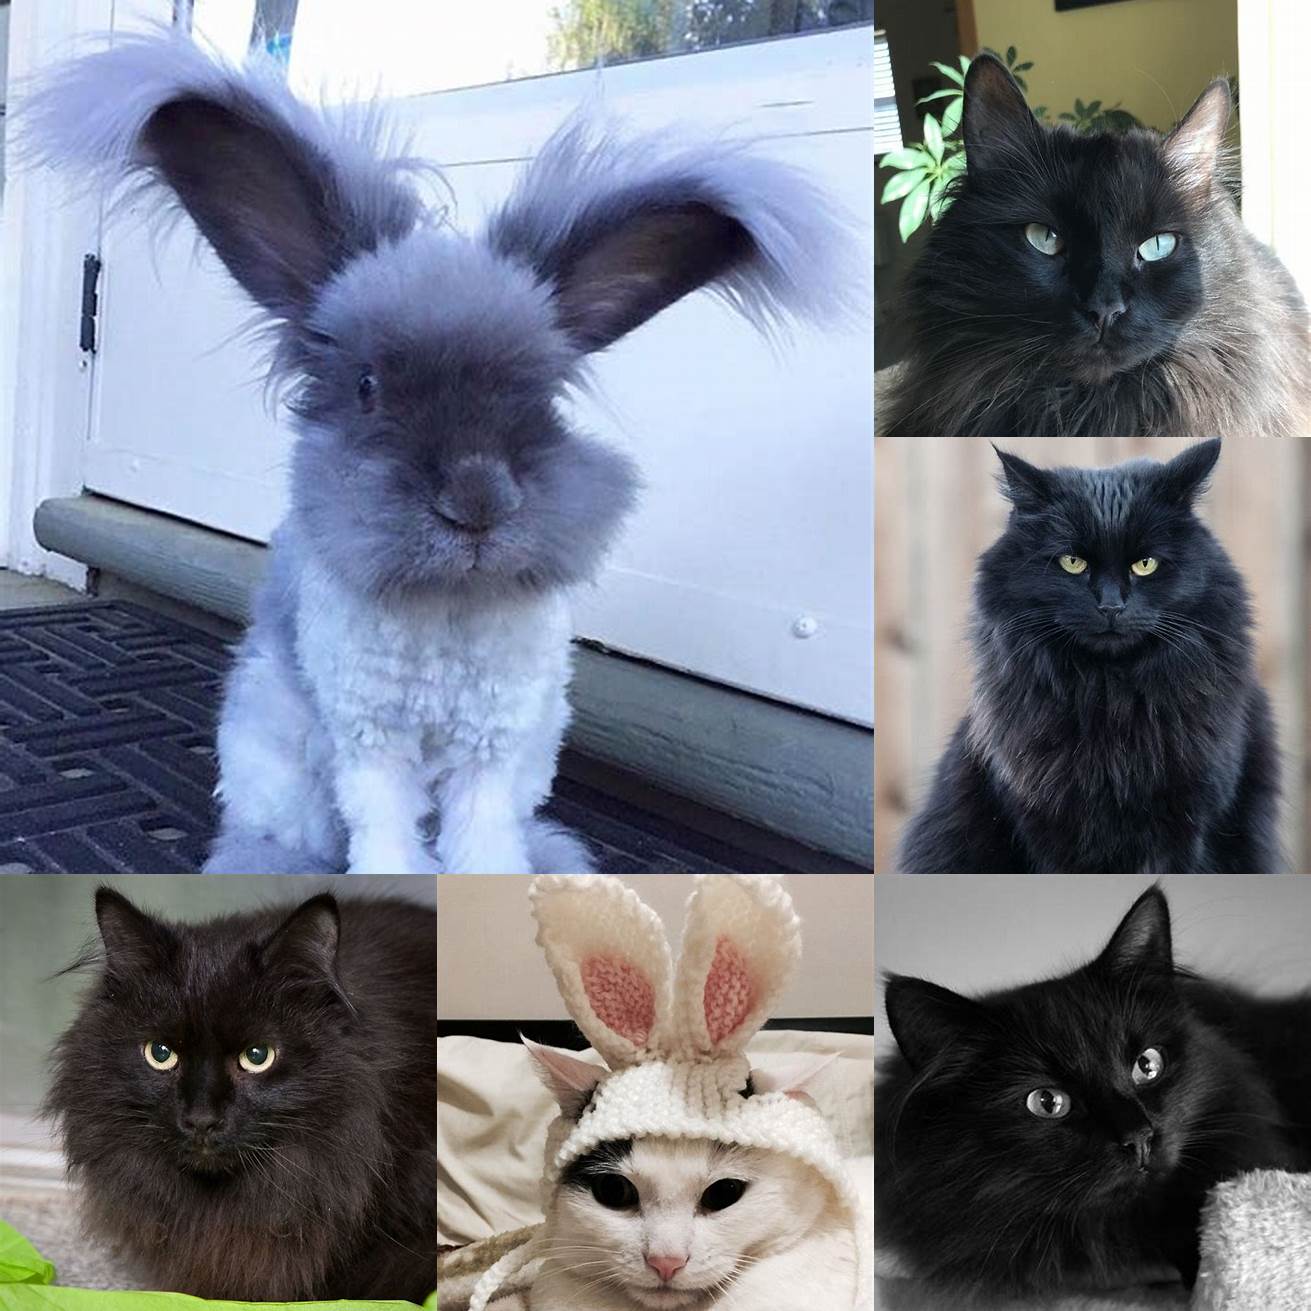 Fluffy bunny ears on a black cat